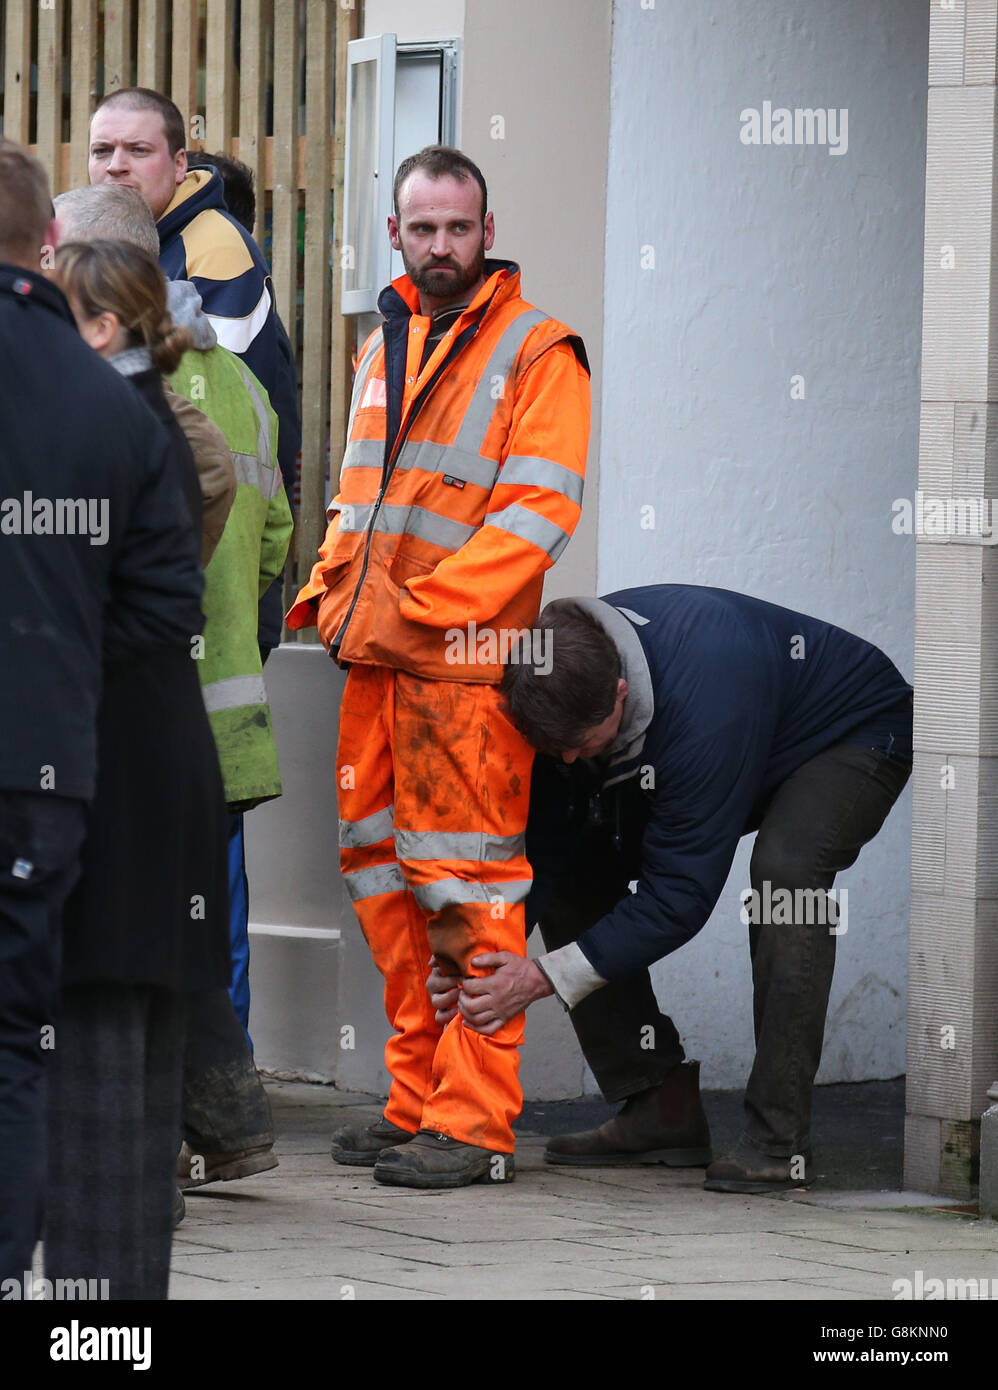 Un homme est foulé à la recherche de la balle de cuir lors de l'événement annuel « Faturon Eve Handba » sur la rue haute de Jedburgh, aux frontières écossaises. Banque D'Images